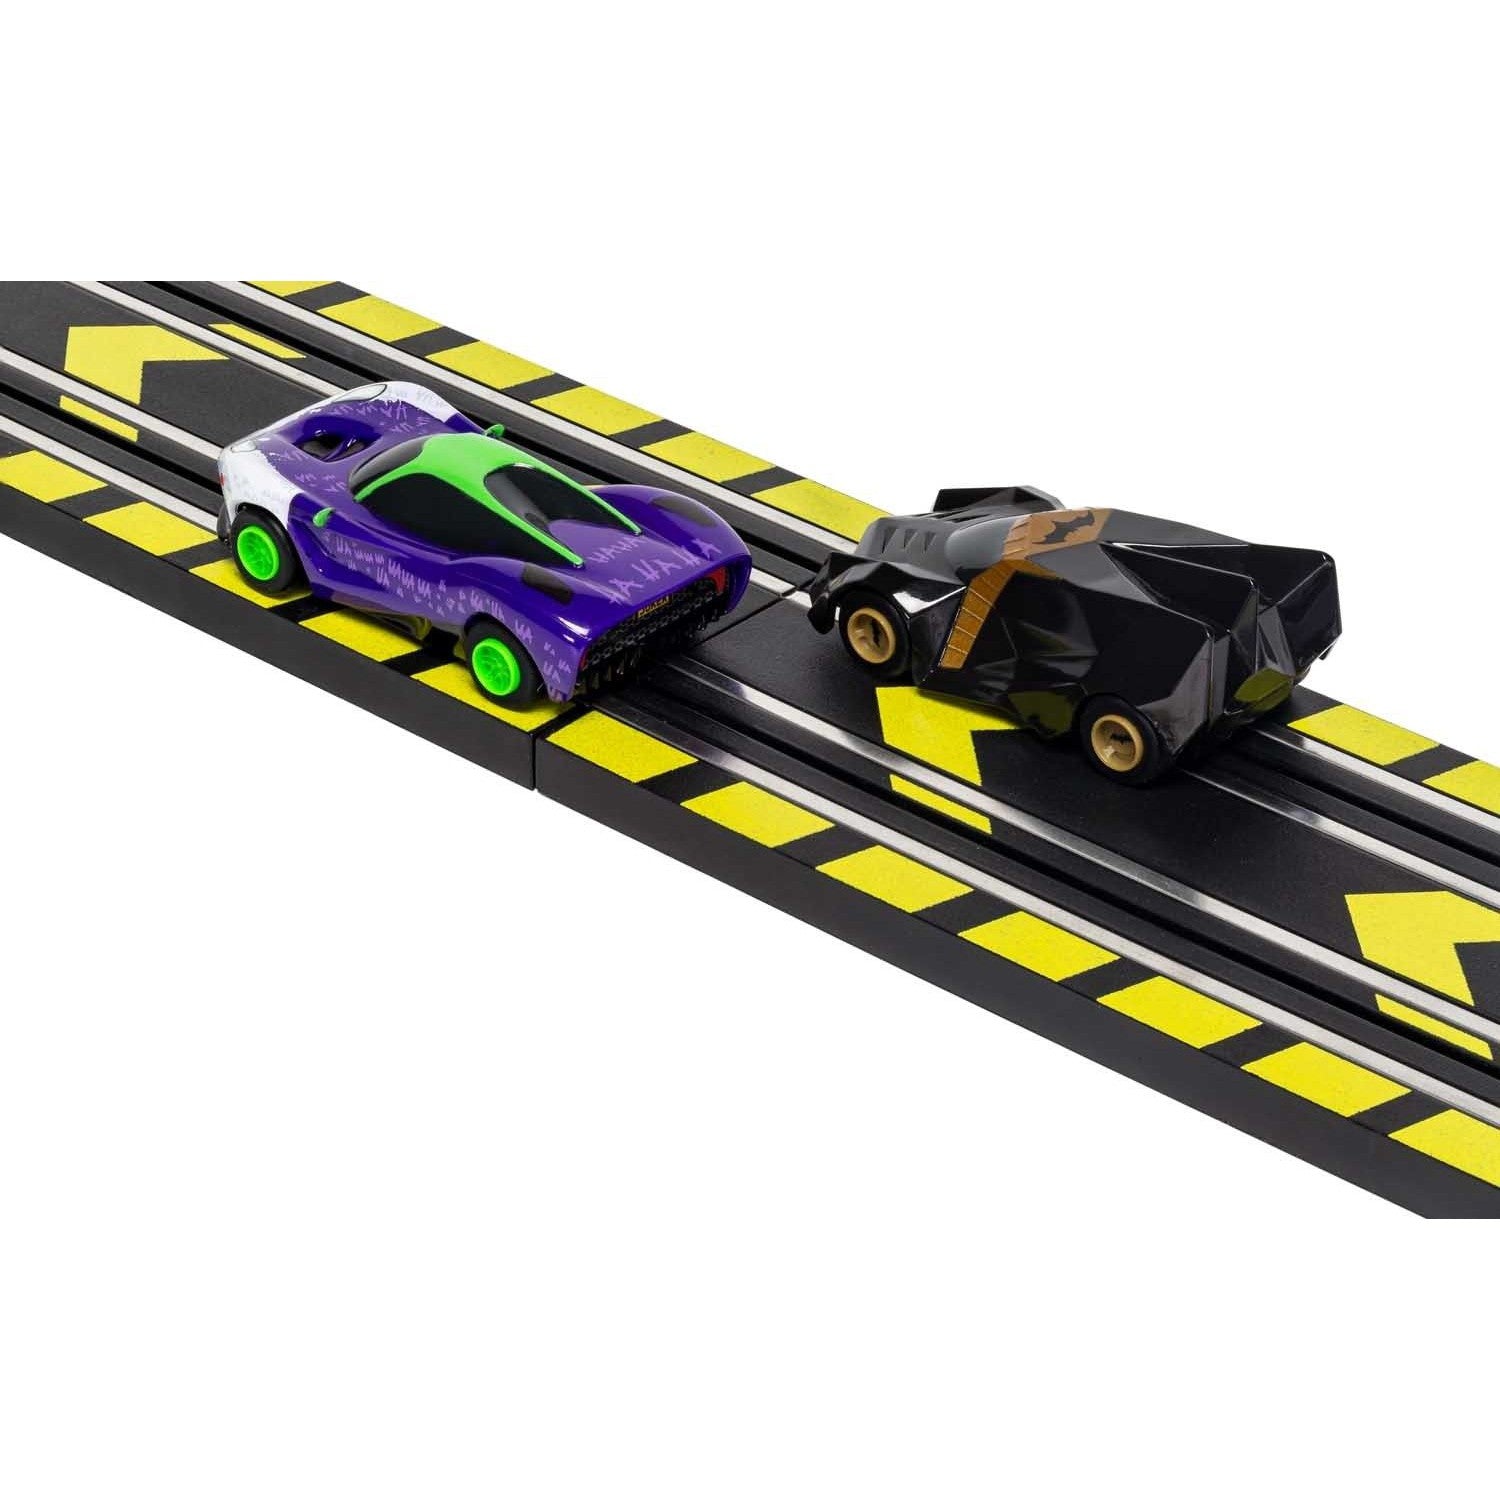 G1155M Micro Scalextric Batman vs Joker Race Set - Excellent